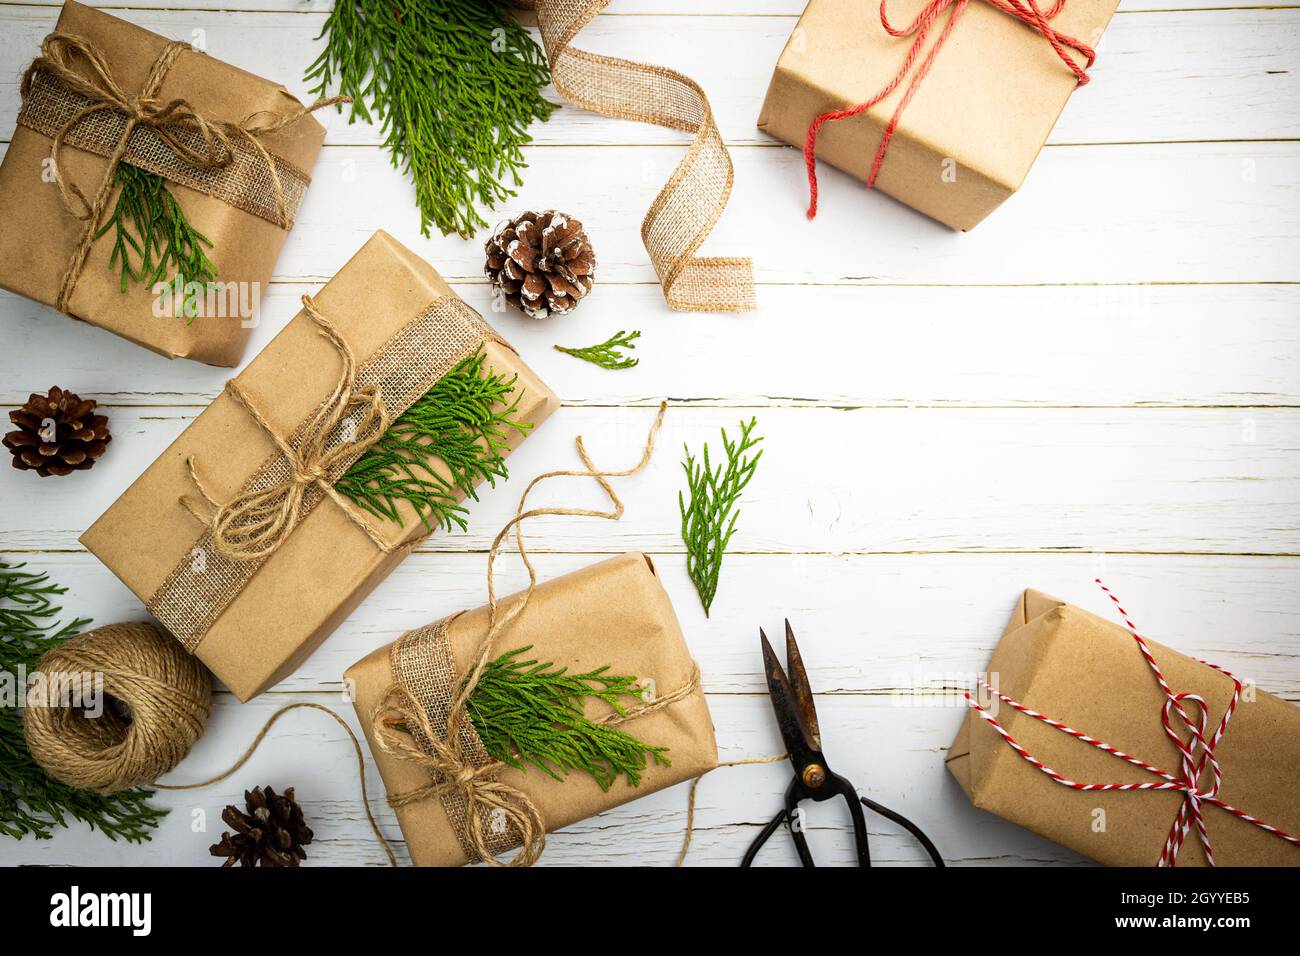 Weihnachtsgeschenk oder Geschenkbox in Kraftpapier mit Dekoration auf  rustikalem Holzhintergrund verpackt, Draufsicht Stockfotografie - Alamy